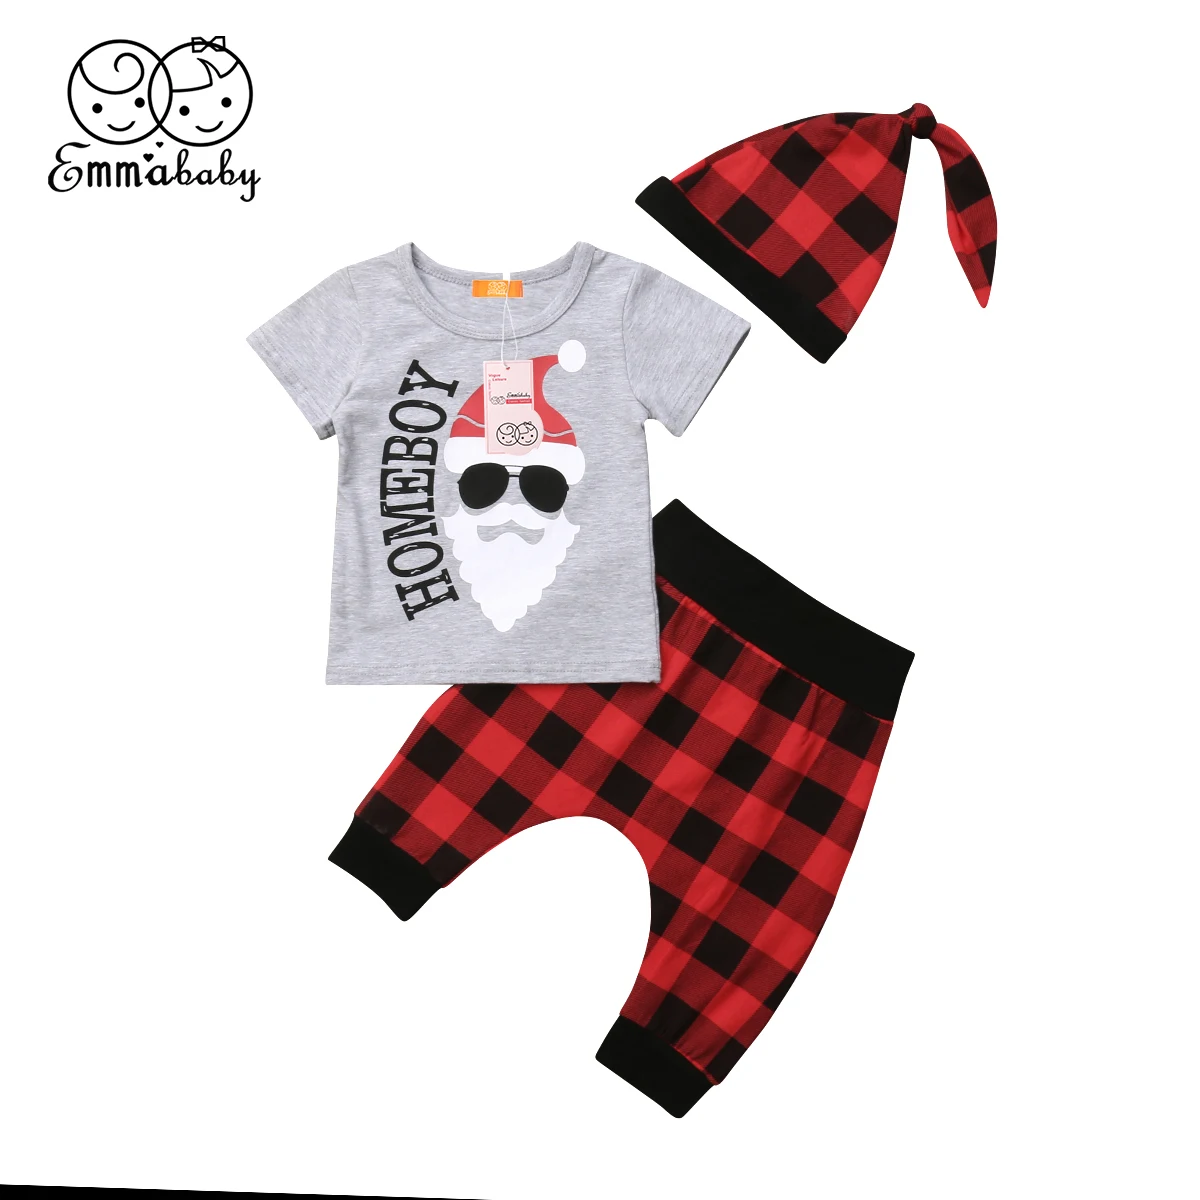 Рождественская одежда США Одежда для новорожденных мальчиков футболка+ штаны-шаровары комплект одежды из 3 предметов для детей от 0 до 18 месяцев